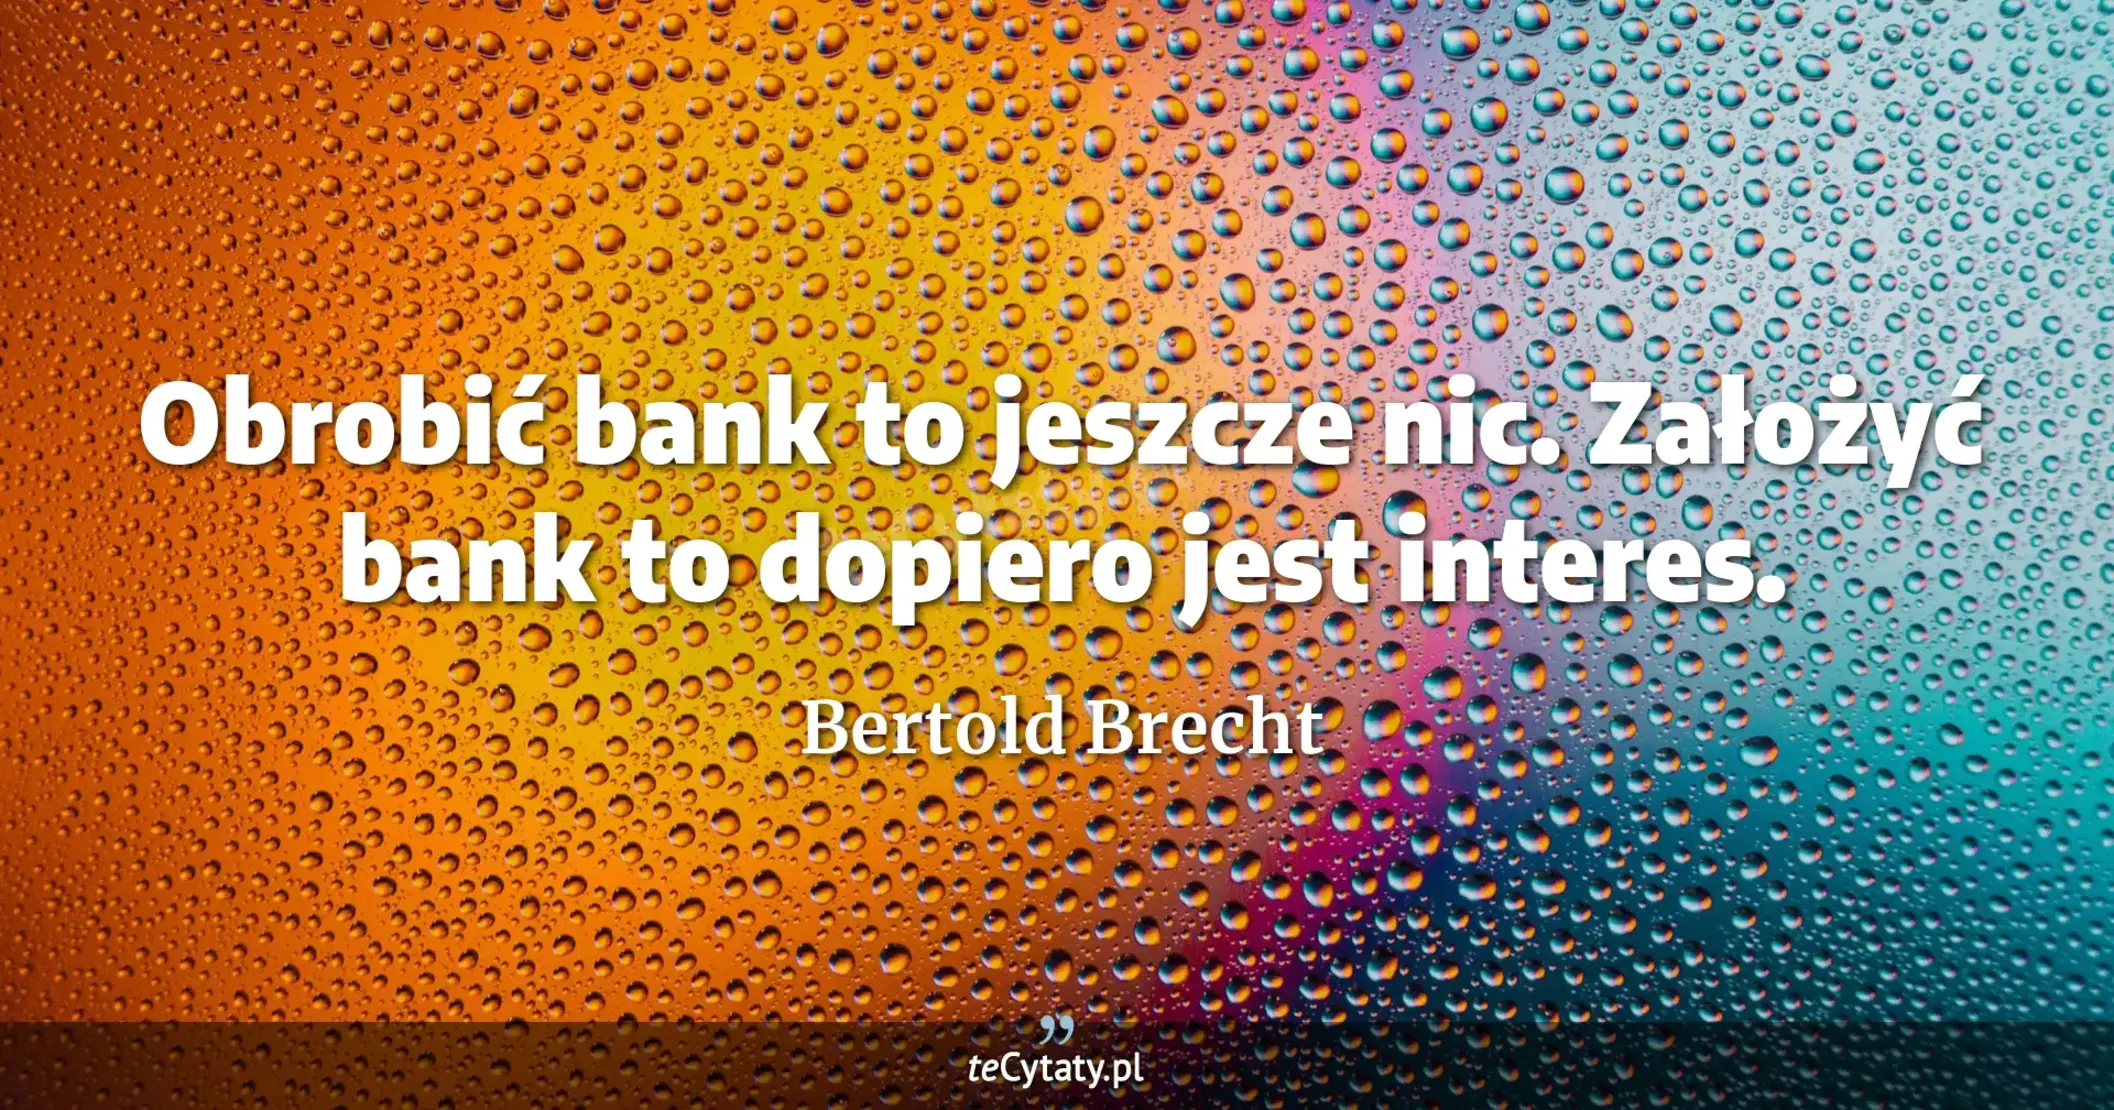 Obrobić bank to jeszcze nic. Założyć bank to dopiero jest interes. - Bertold Brecht